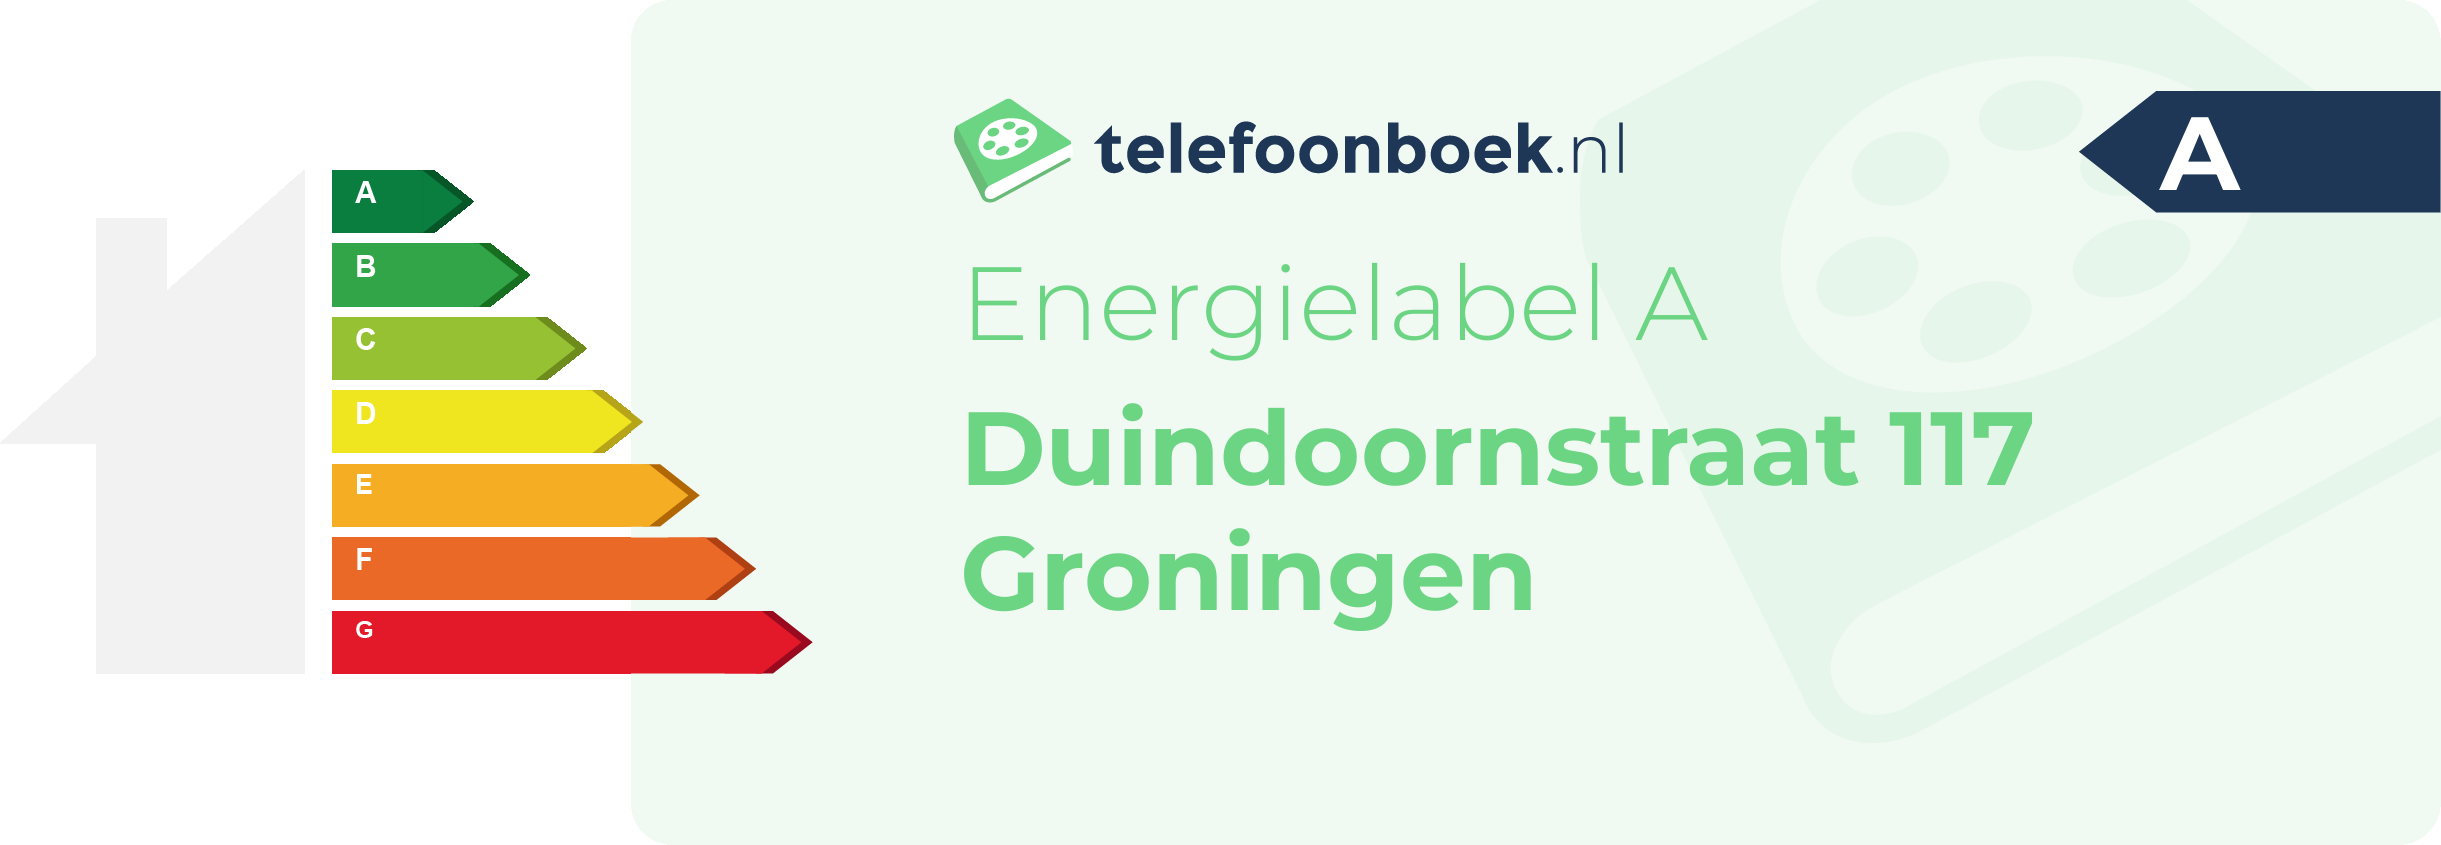 Energielabel Duindoornstraat 117 Groningen